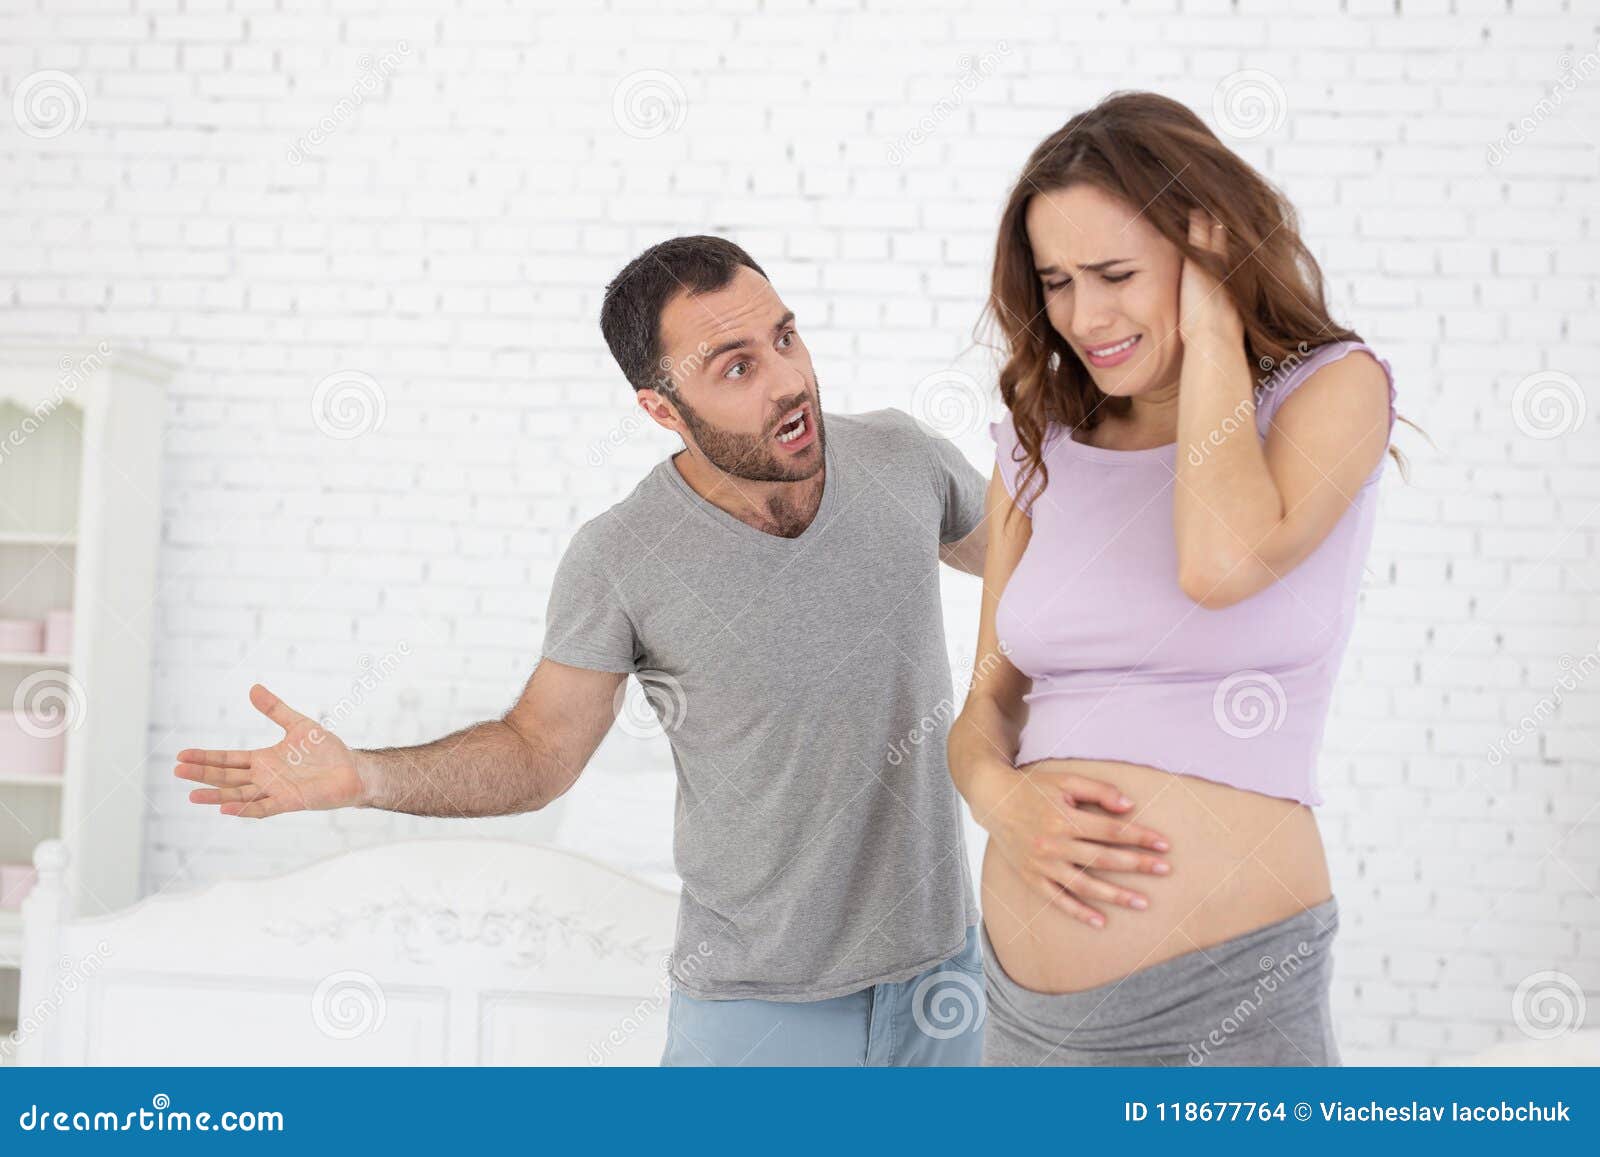 Мачеха просит забеременеть. Кричит на беременную.